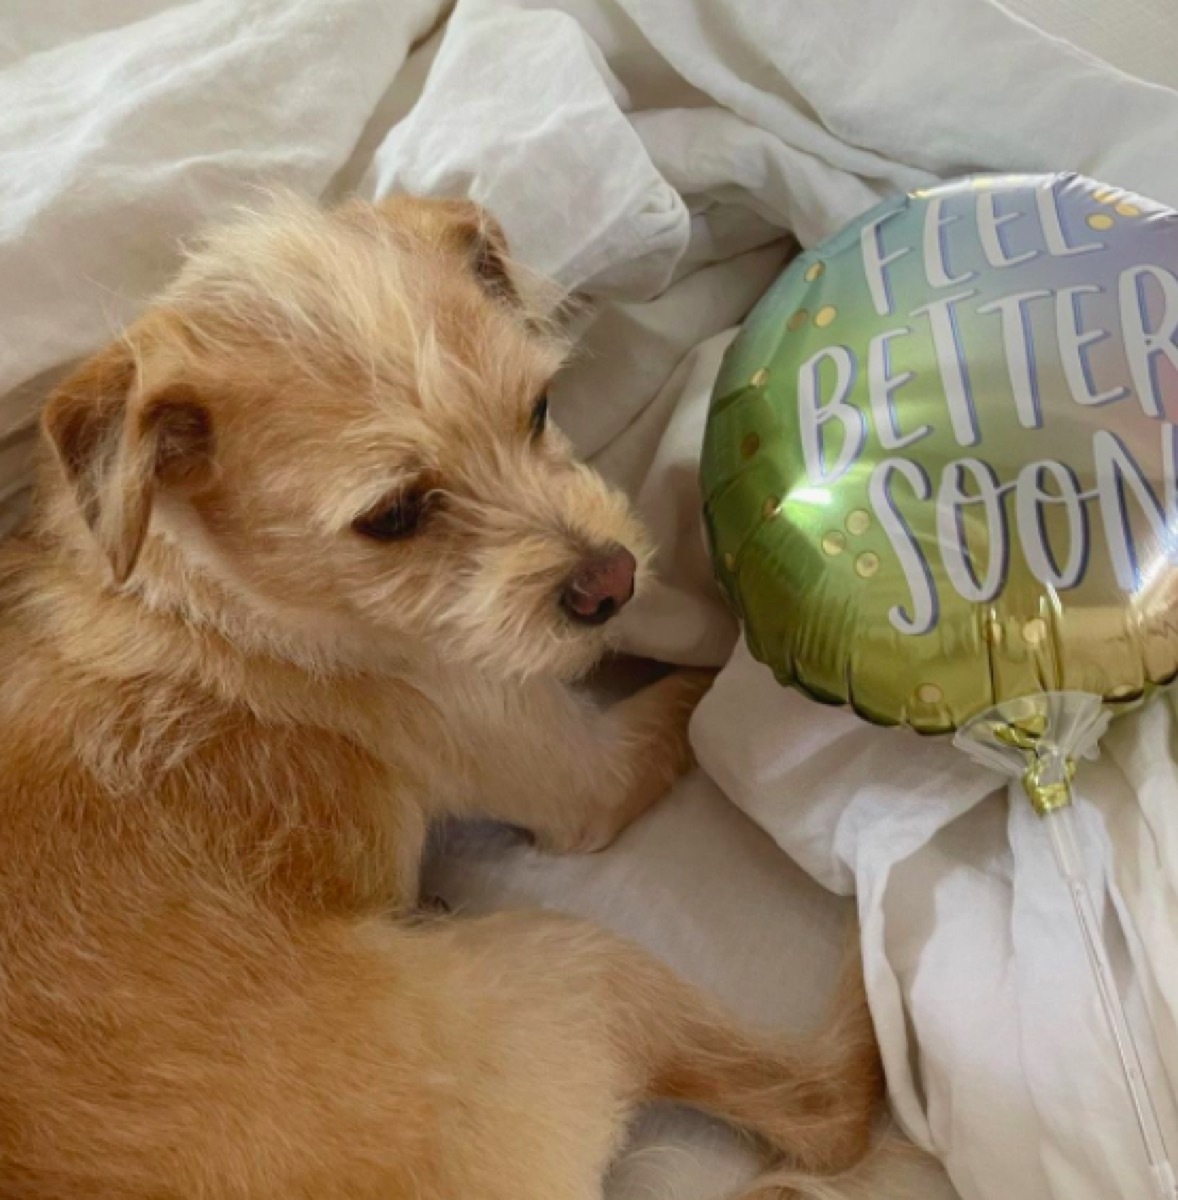 Catt Sadler's dog and balloon